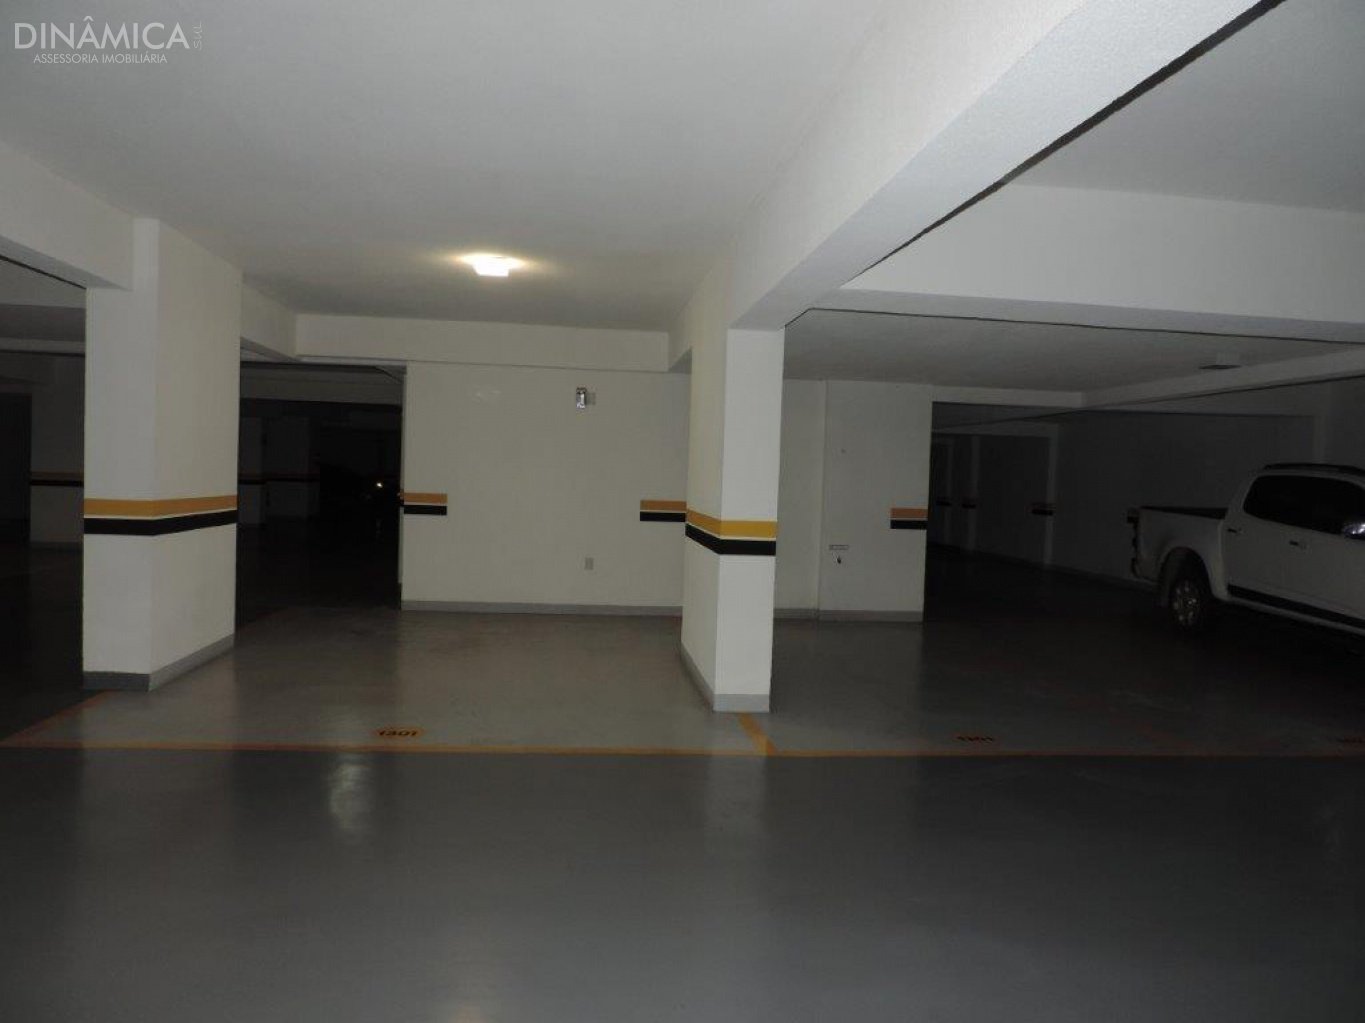 Apartamento no Edifício Residencial  Merithaman com 03 Dormitórios  em Balneário Camboriú no Bairro Centro, duas Vagas de Garagem